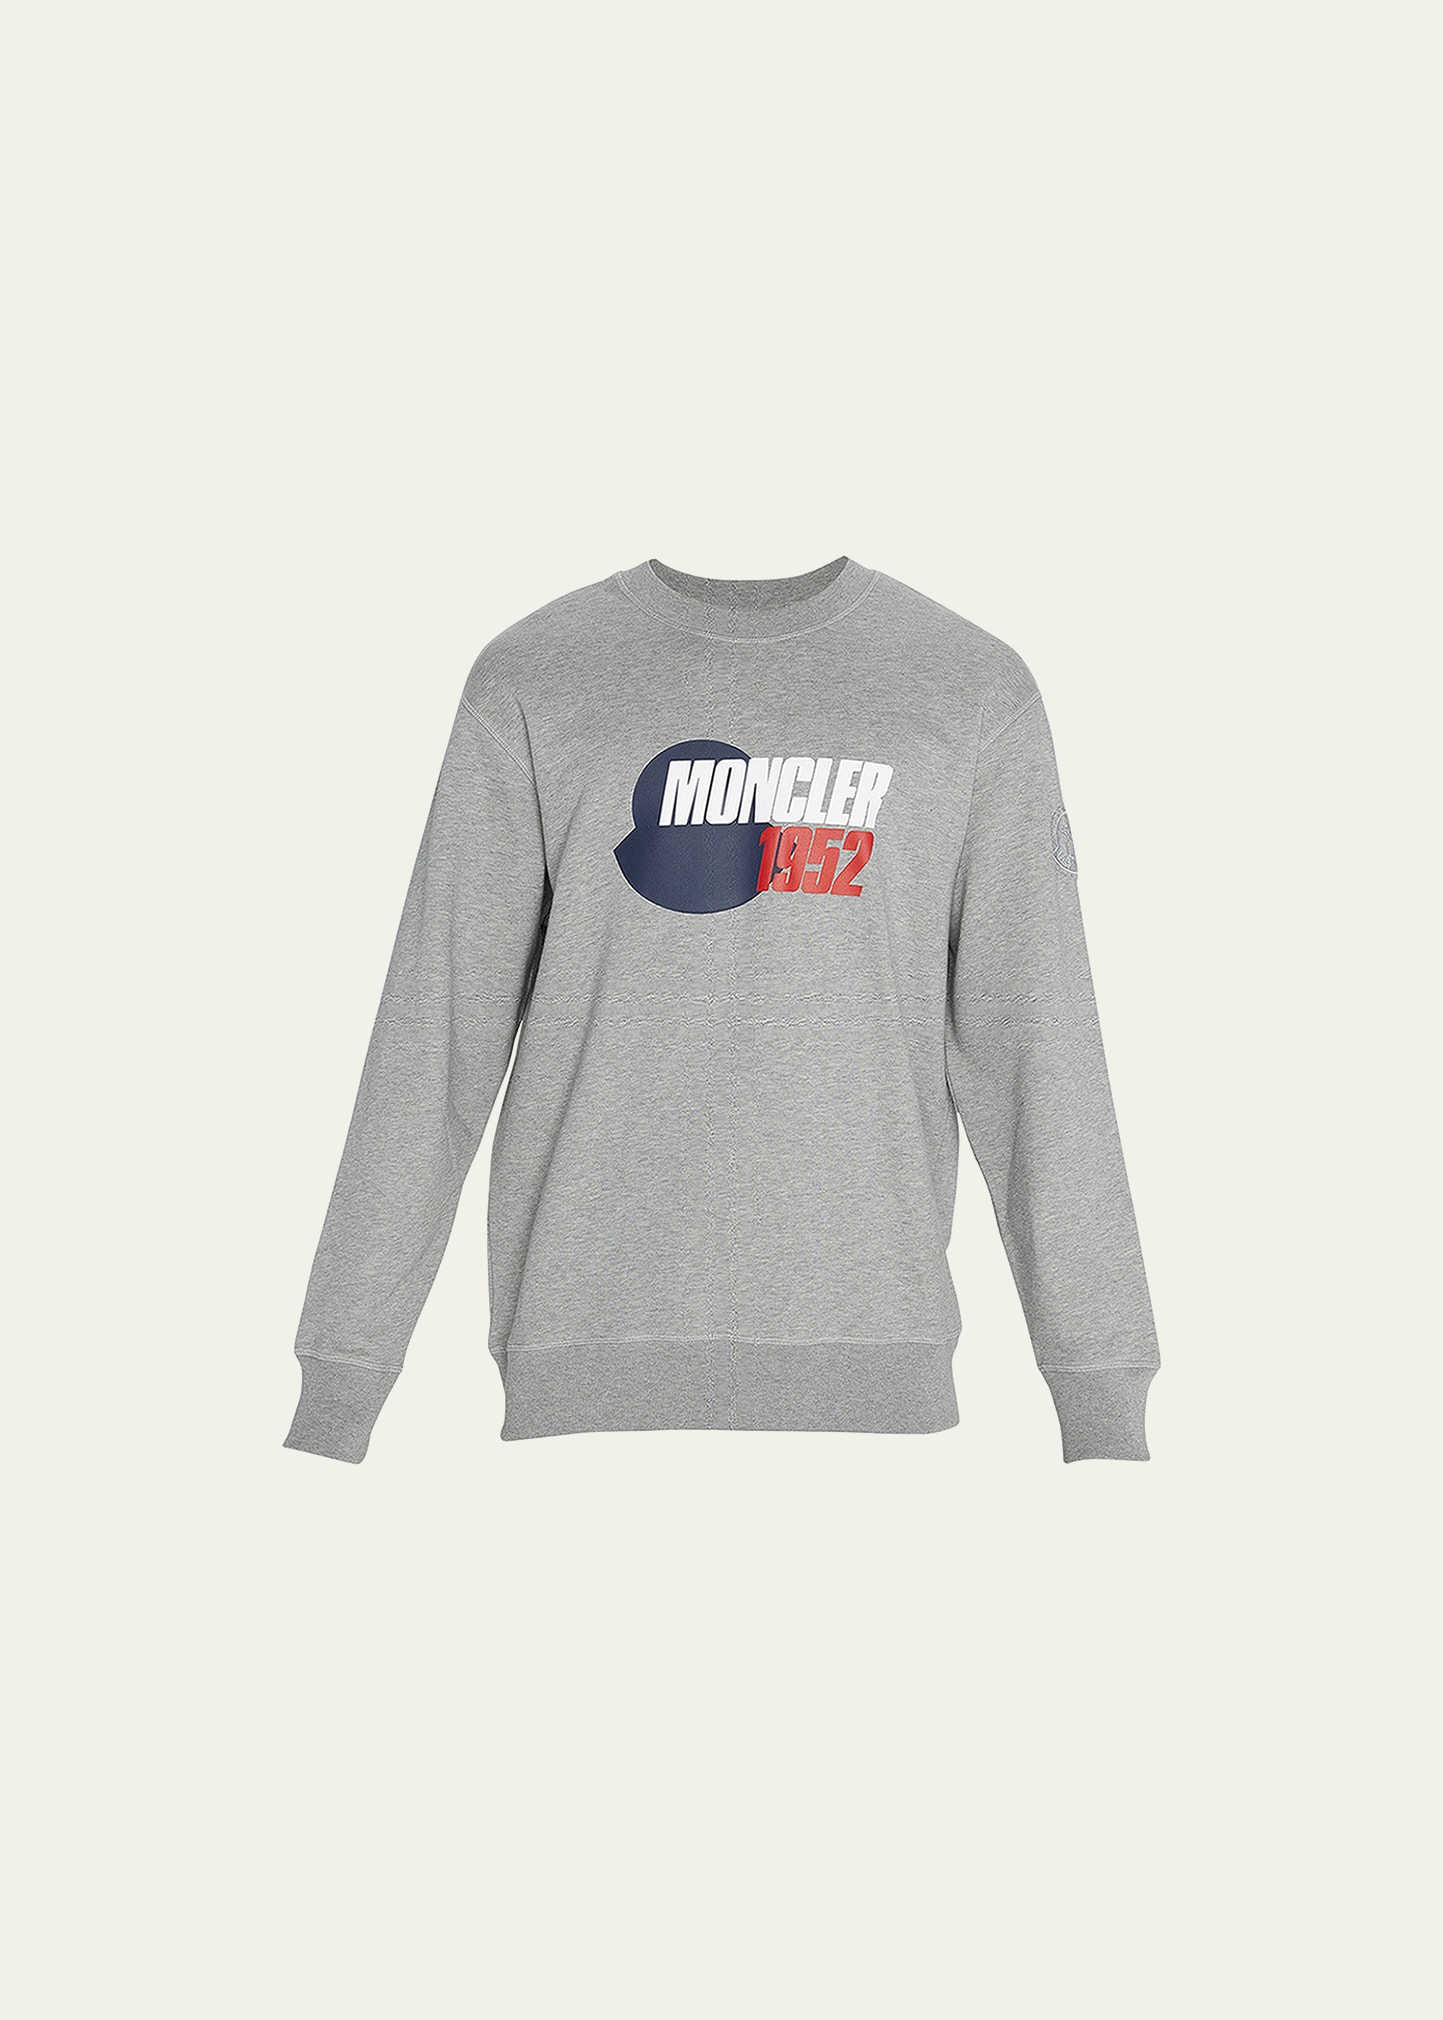 Moncler Genius Men's 52 Logo Sweatshirt In Light Grey